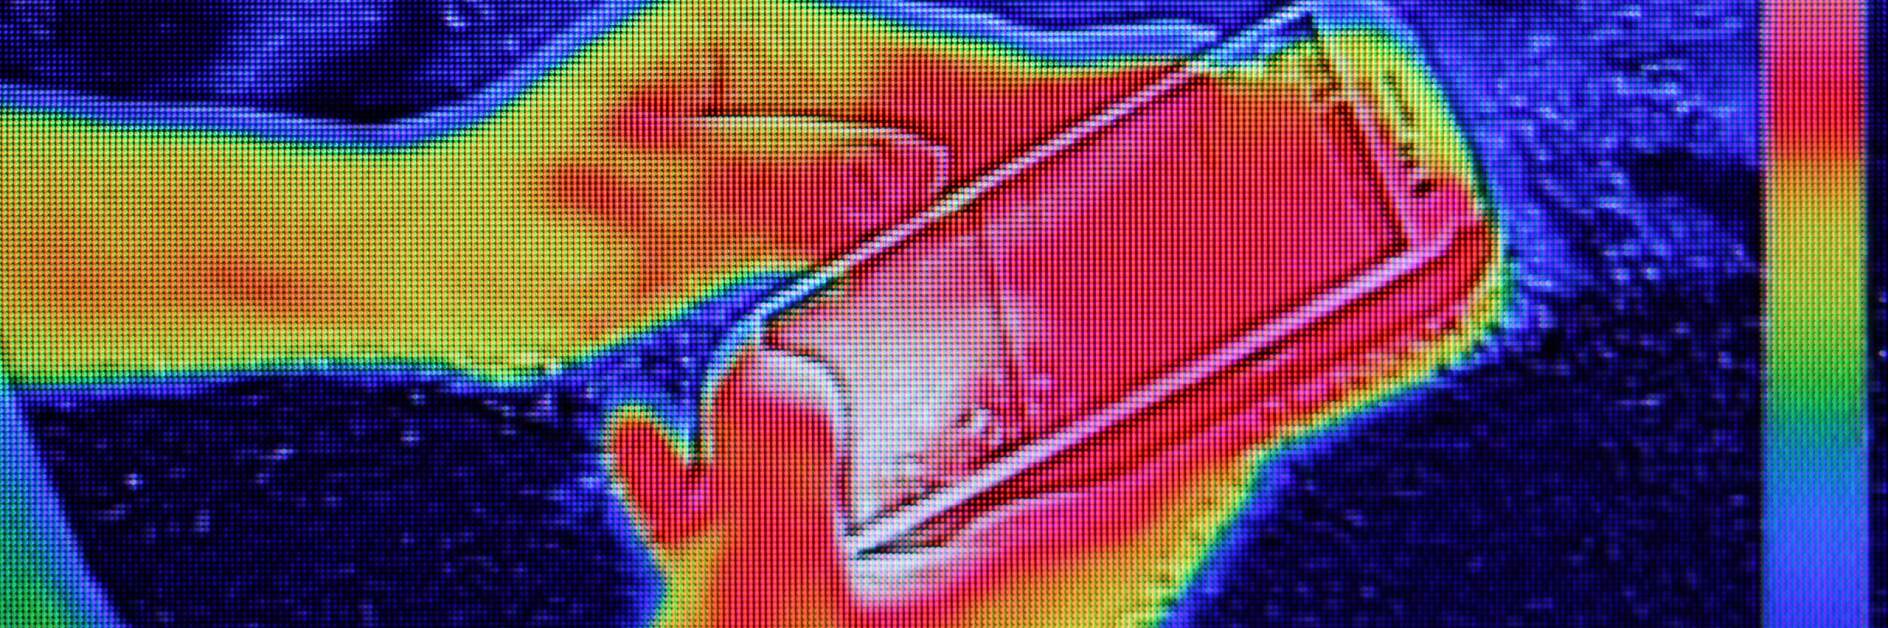 Image infrarouge montrant l'émission de chaleur lorsqu'une jeune fille a utilisé un smartphone